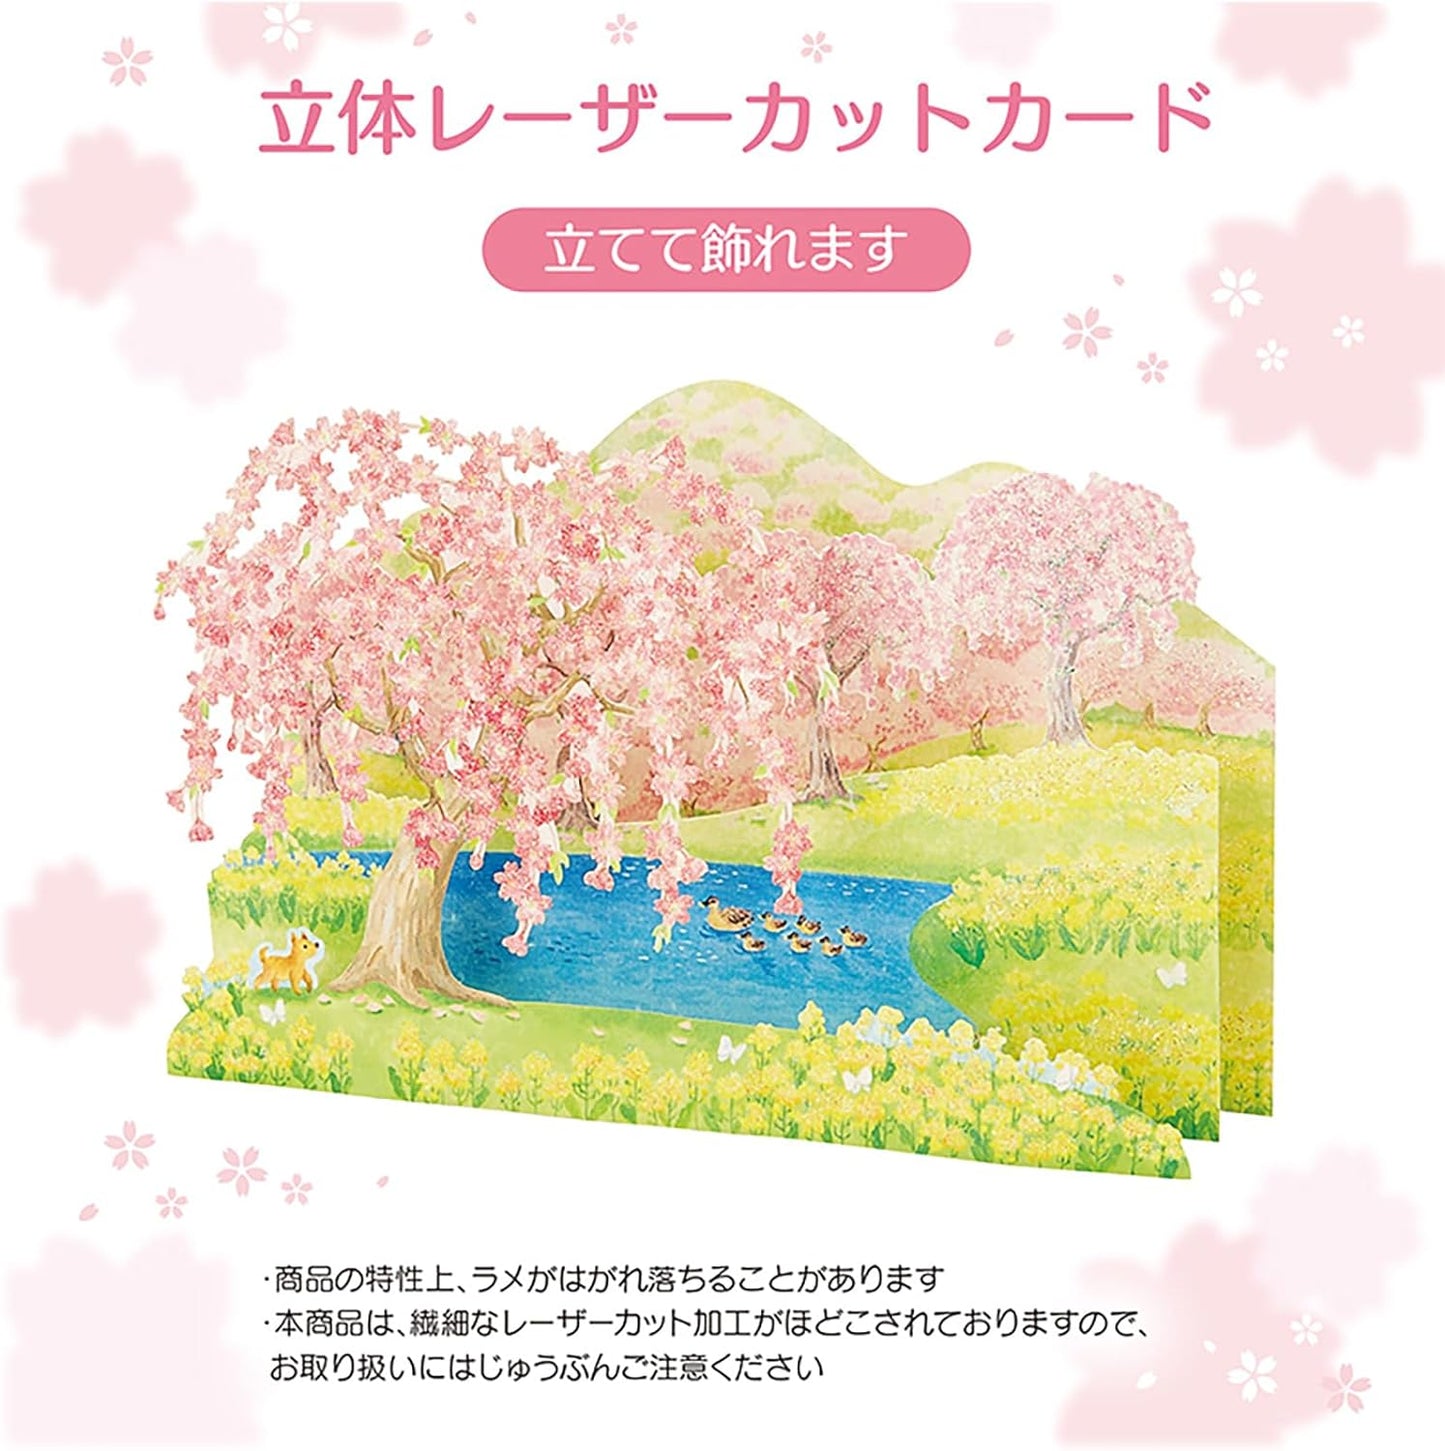 Sanrio Greeting Card: Sakura Duck Pond